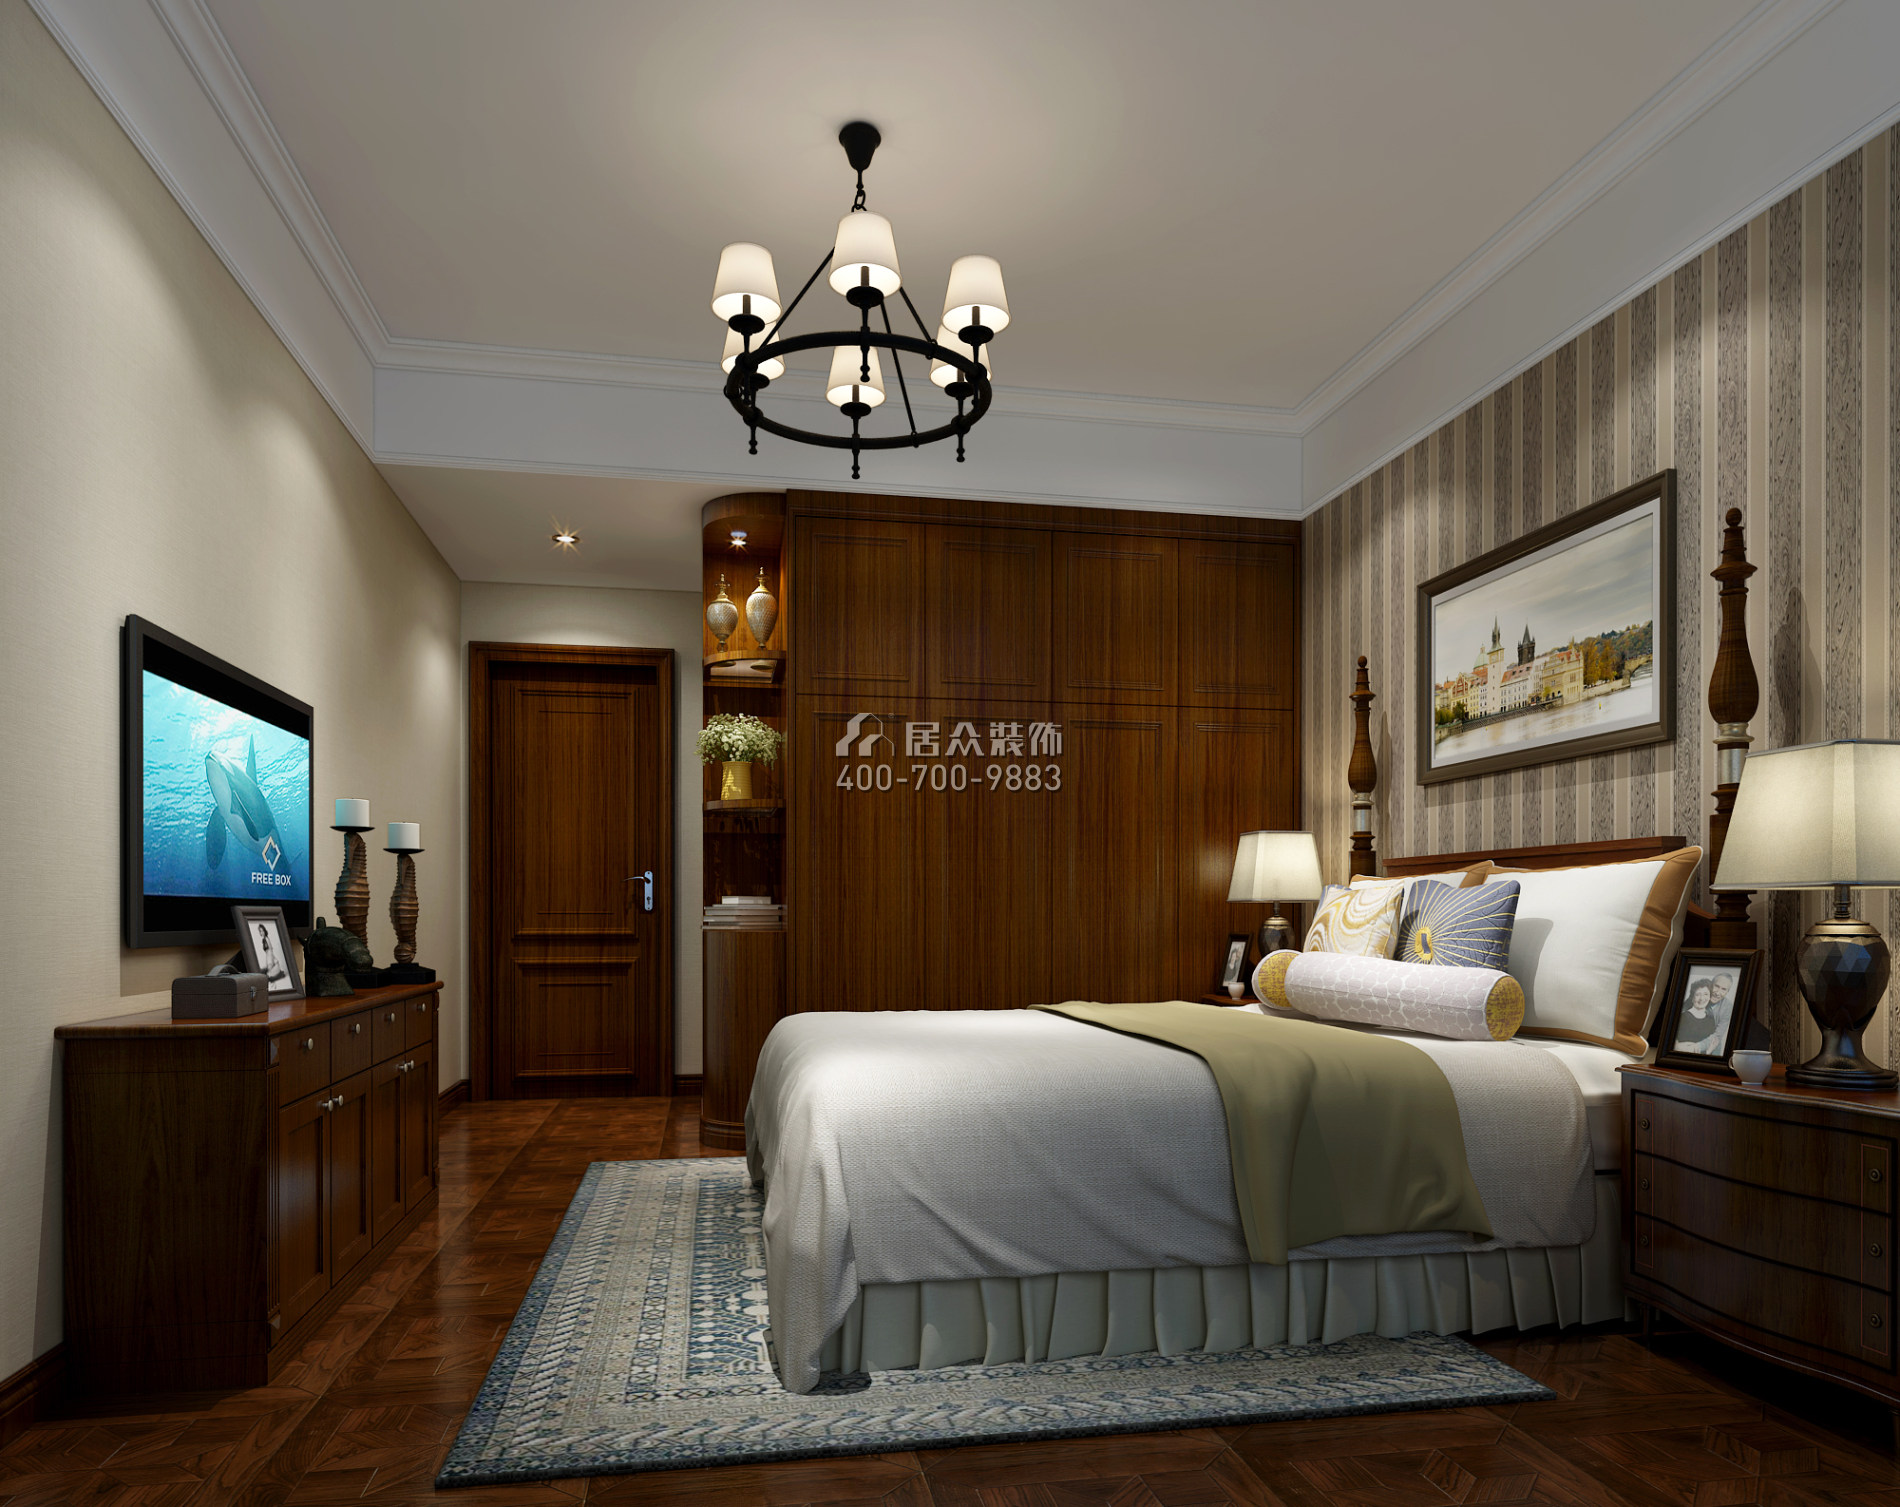 维港半岛167平方米美式风格平层户型卧室kok电竞平台效果图